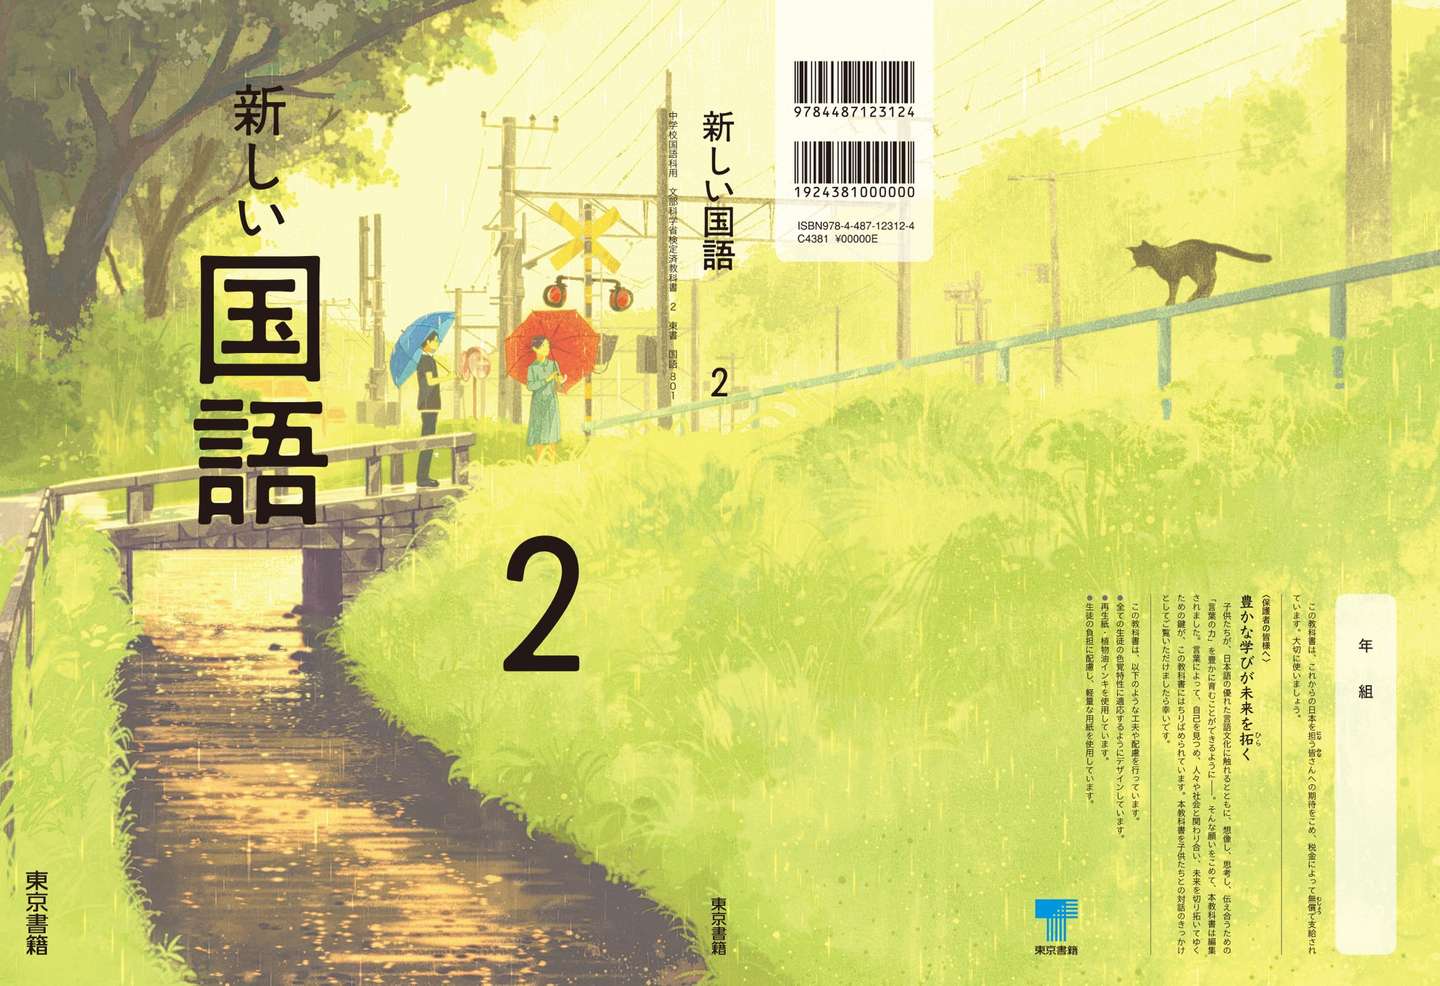 日本中小学生最新国语教科书封面公开 这也太美了吧 知乎